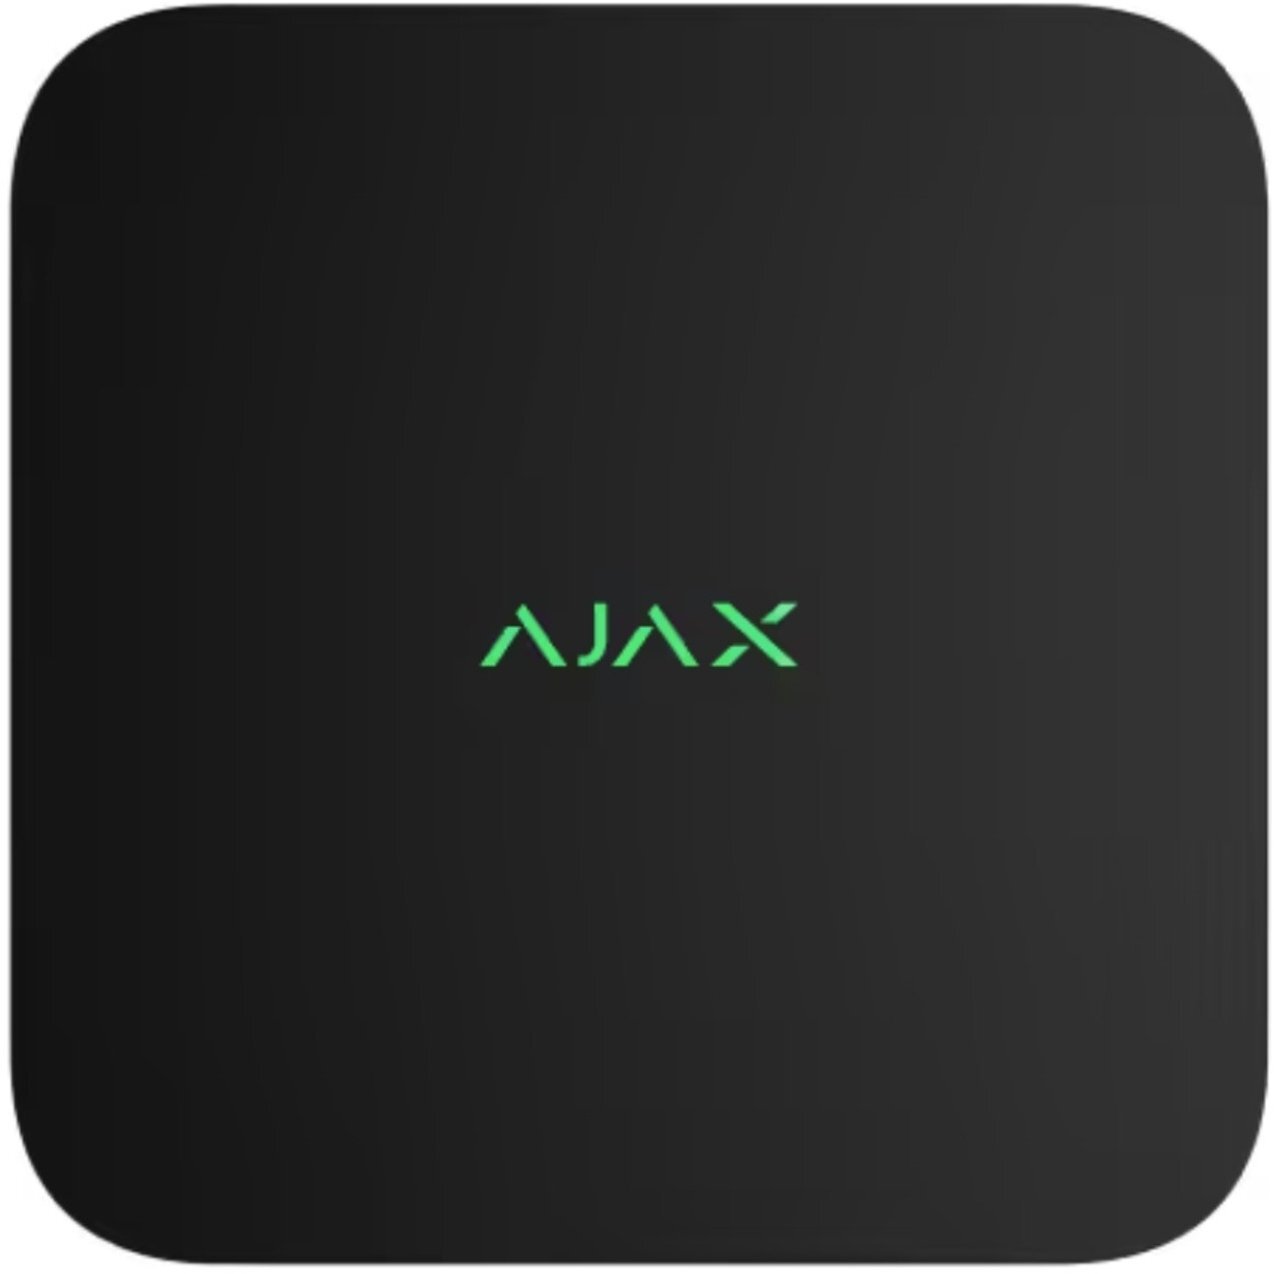 Сетевой видеорегистратор Ajax NVR, 16 каналов, jeweller, черный в Херсоне